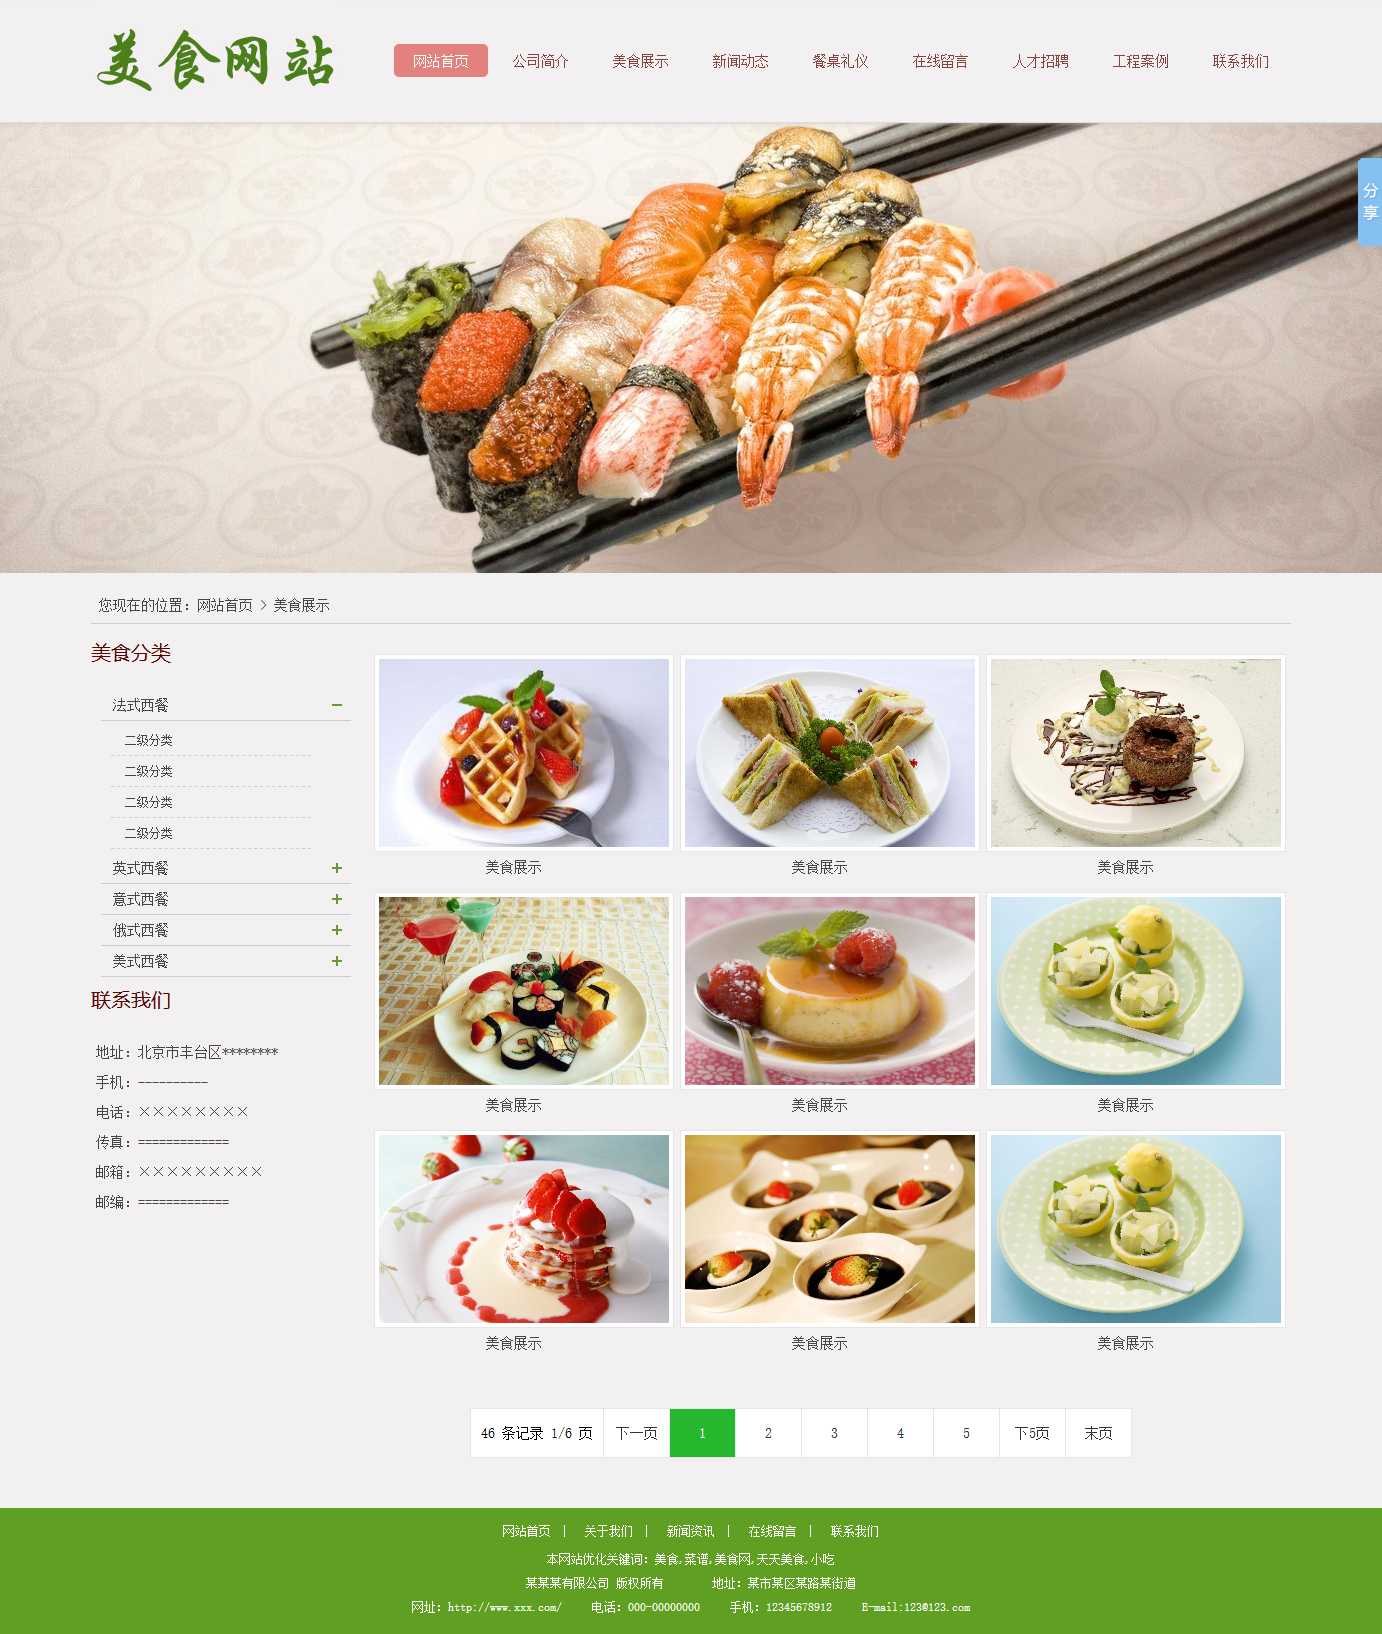 美食,菜谱,小吃培训网站图片列表效果图